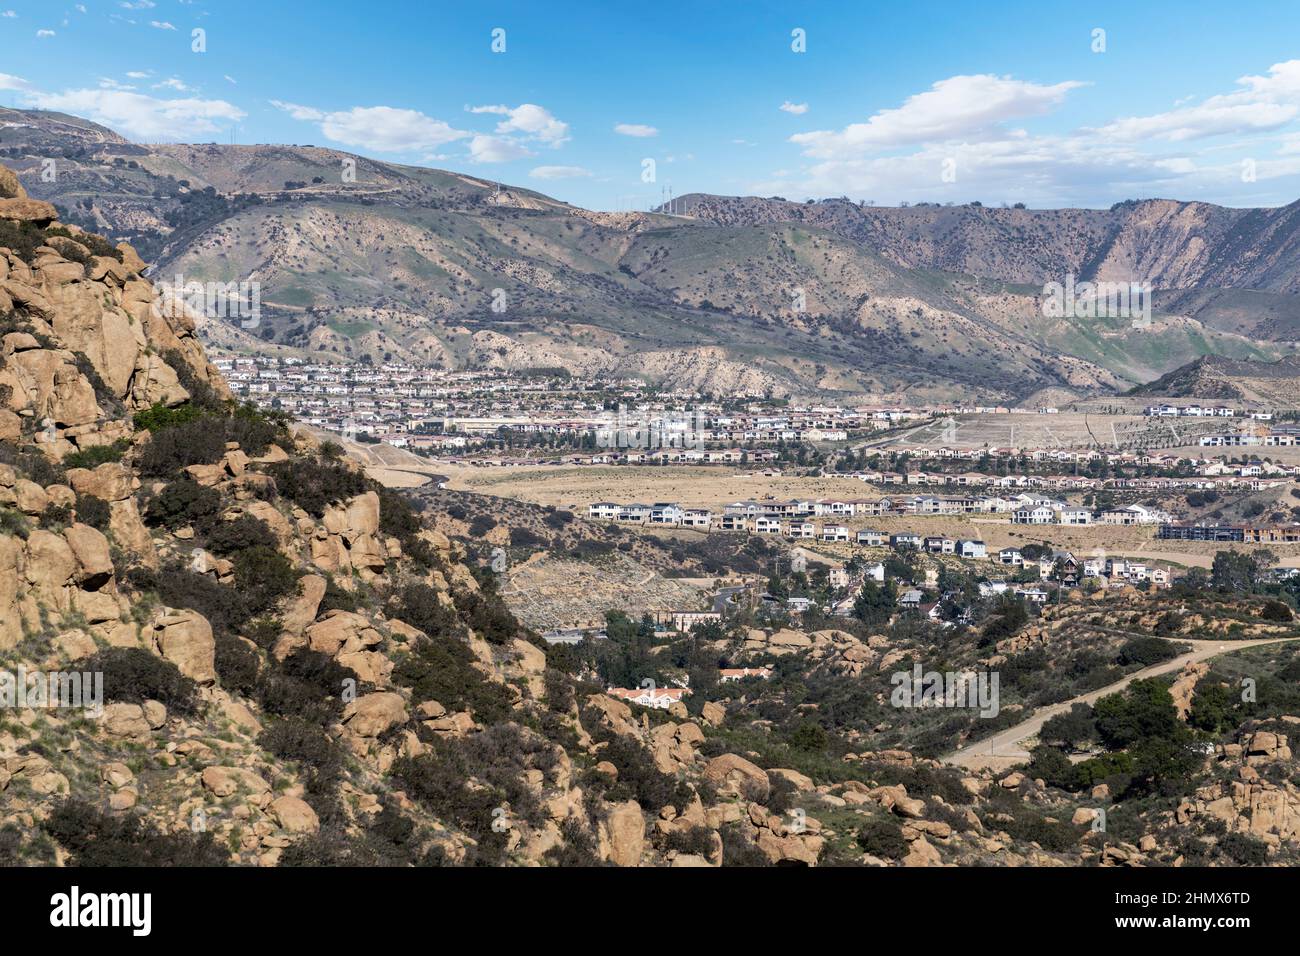 La extensión suburbana de Los Ángeles se extiende hacia las montañas de Santa Susana por encima del Porter Ranch y el barrio de Chatsworth en el Valle de San Fernando. Foto de stock